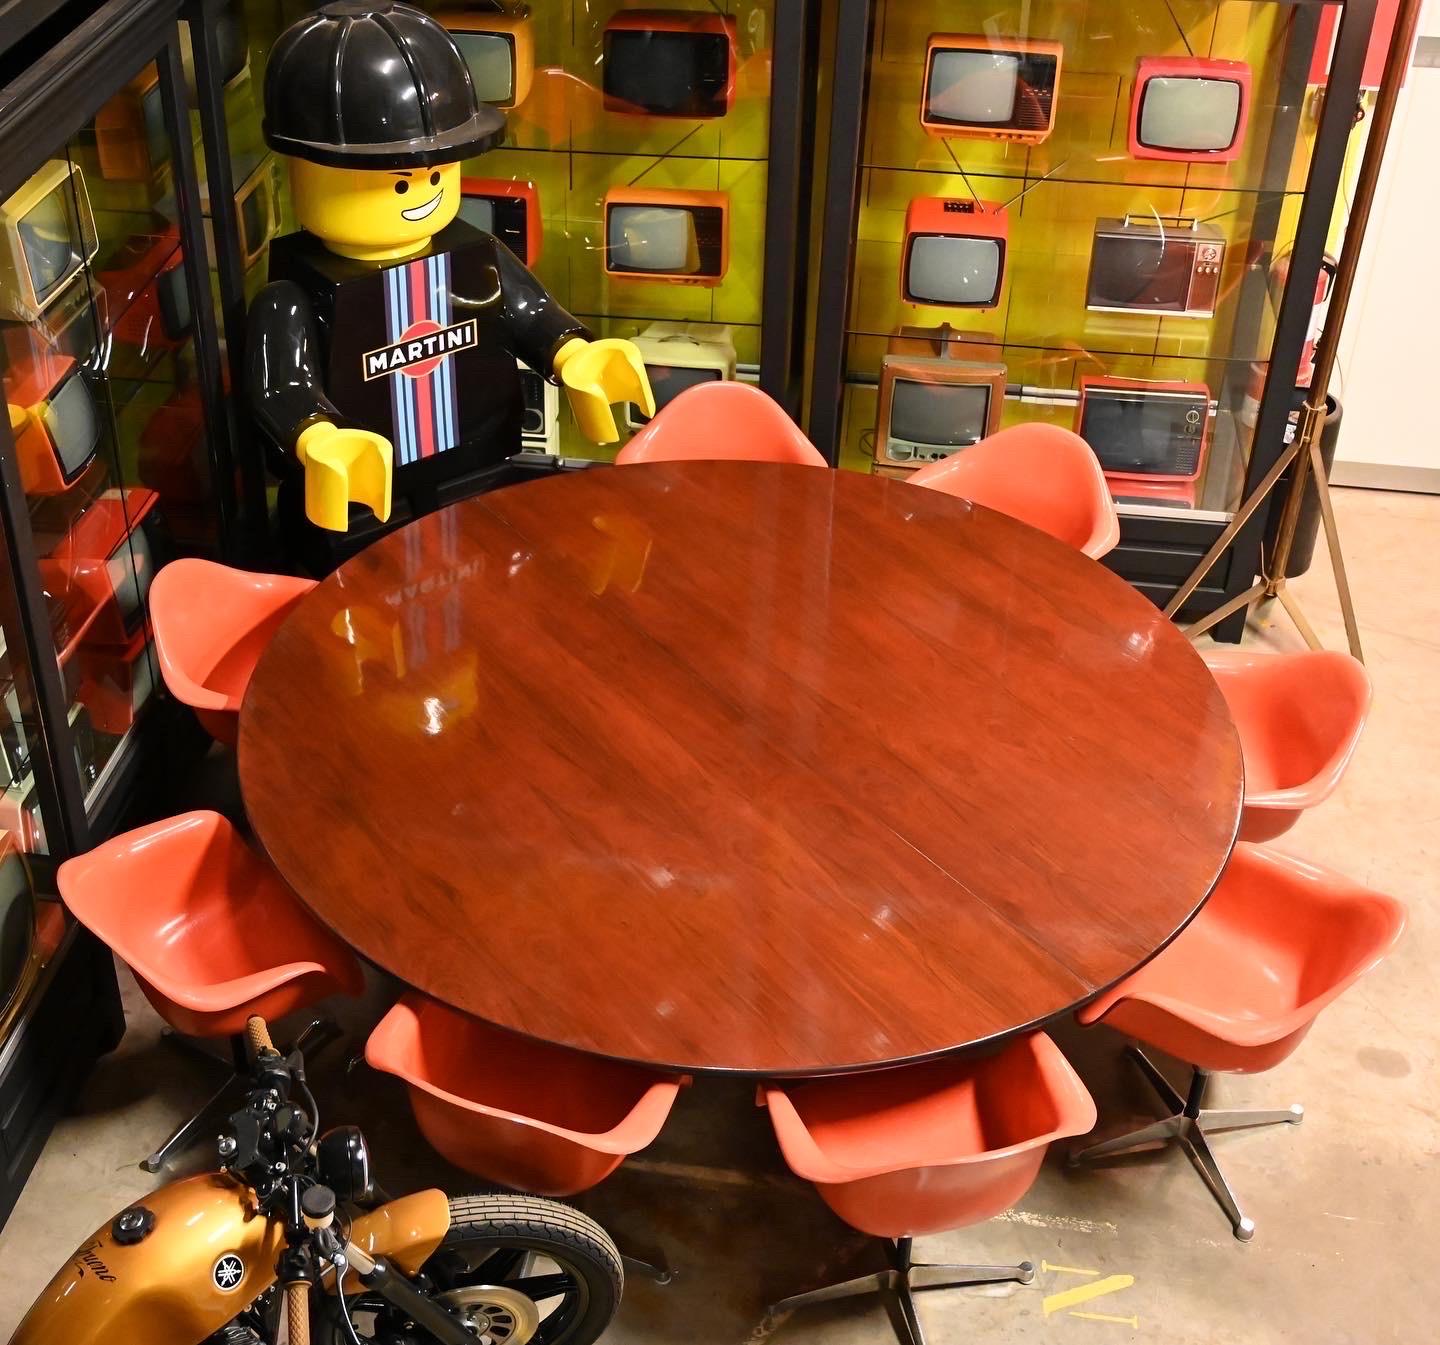 Wir präsentieren den Mid-Century Charles Eames by Herman Miller Orange Fiberglass Shell Chair, ein zeitloses Stück Designgeschichte. Wir freuen uns, ein Set von acht dieser ikonischen Stühle anbieten zu können, die als komplettes Ensemble oder